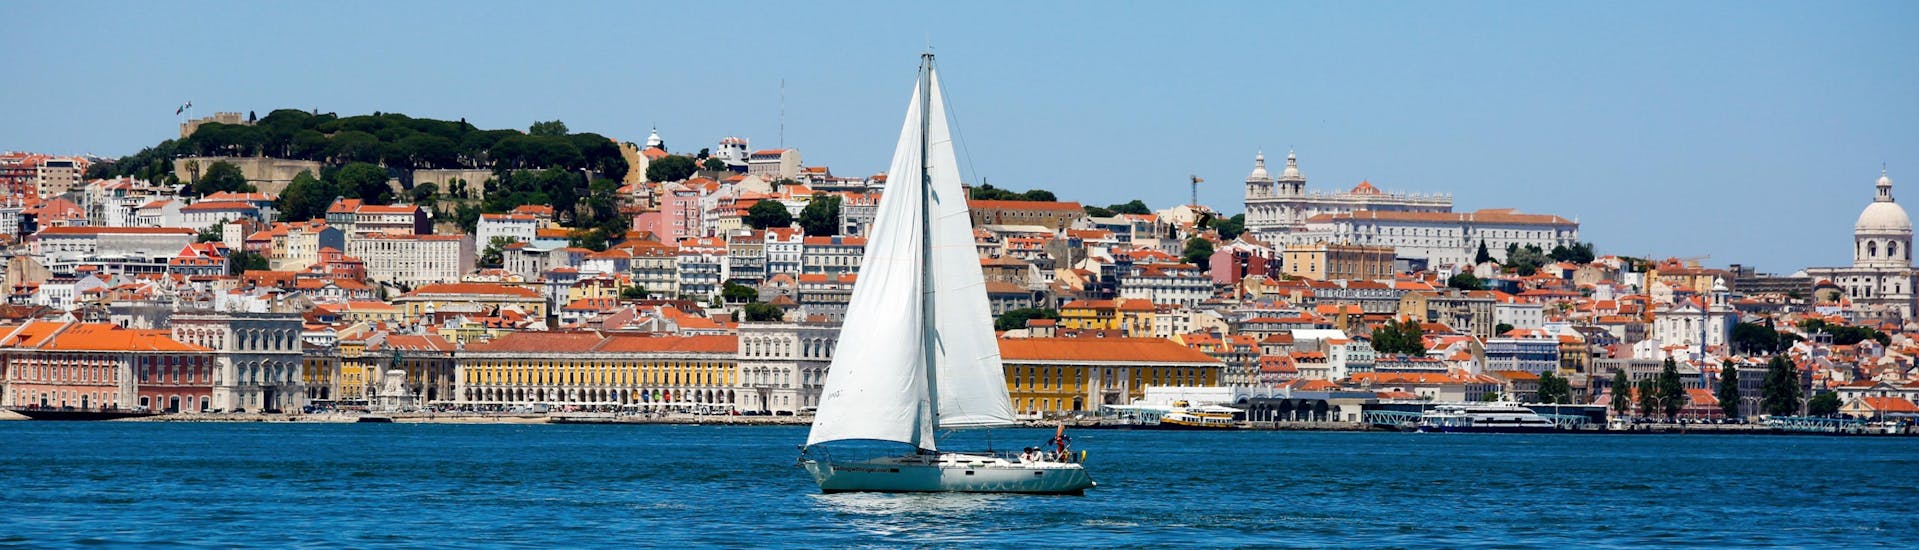 Lissabon vom Fluss Tajo aus gesehen, eine wunderbare Aussicht, die man bei einer Bootstour genießen kann.